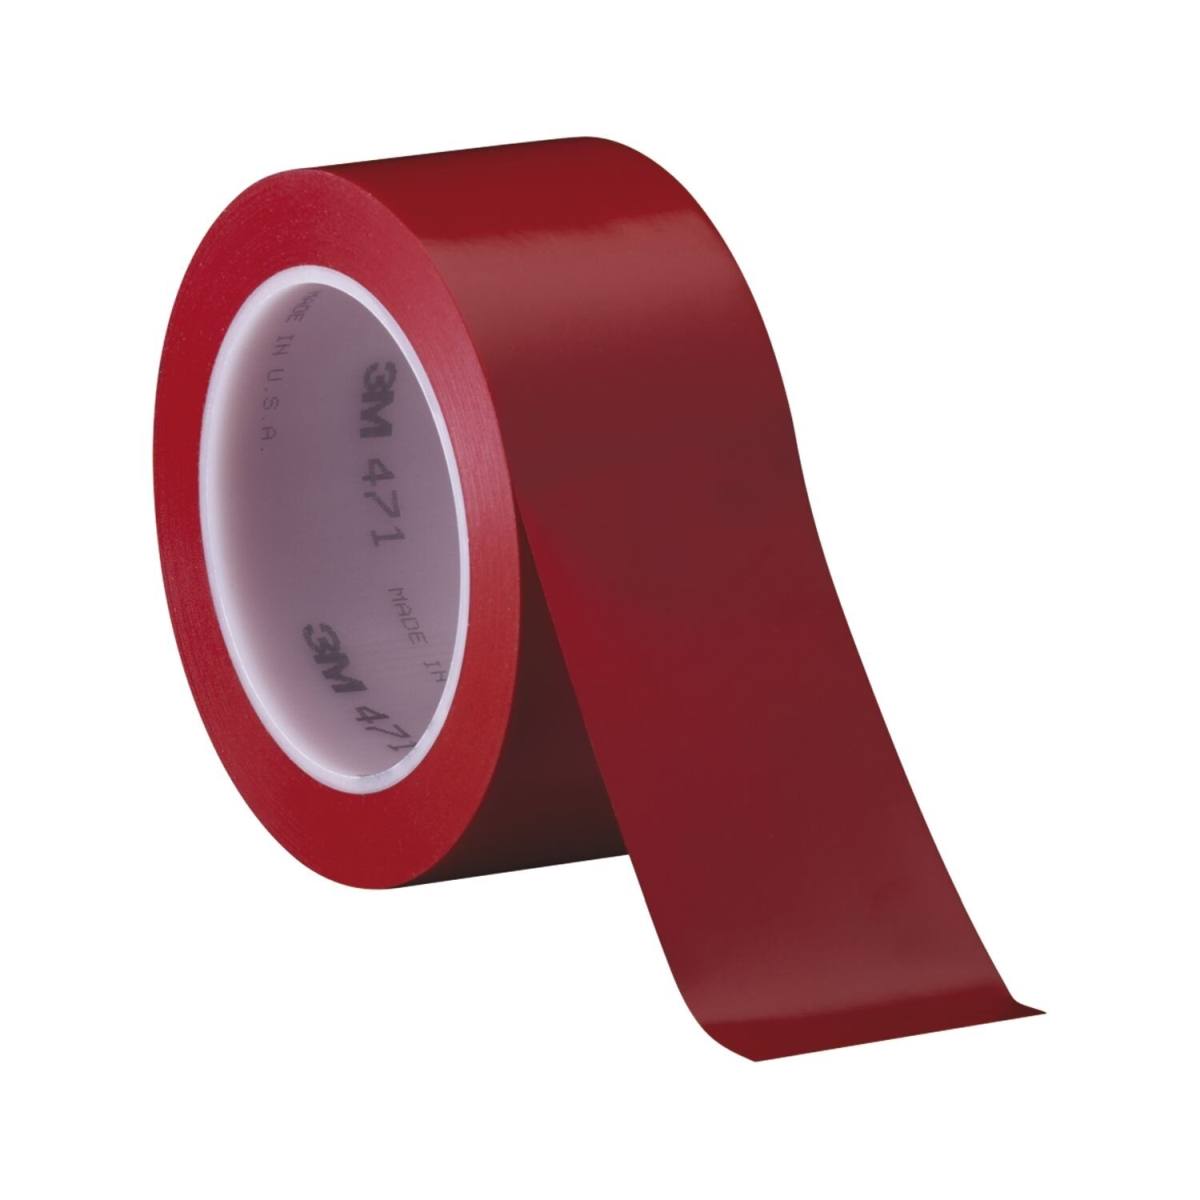 Cinta adhesiva de PVC blando 3M 471 F, roja, 50 mm x 33 m, 0,13 mm, embalada individualmente y de forma práctica